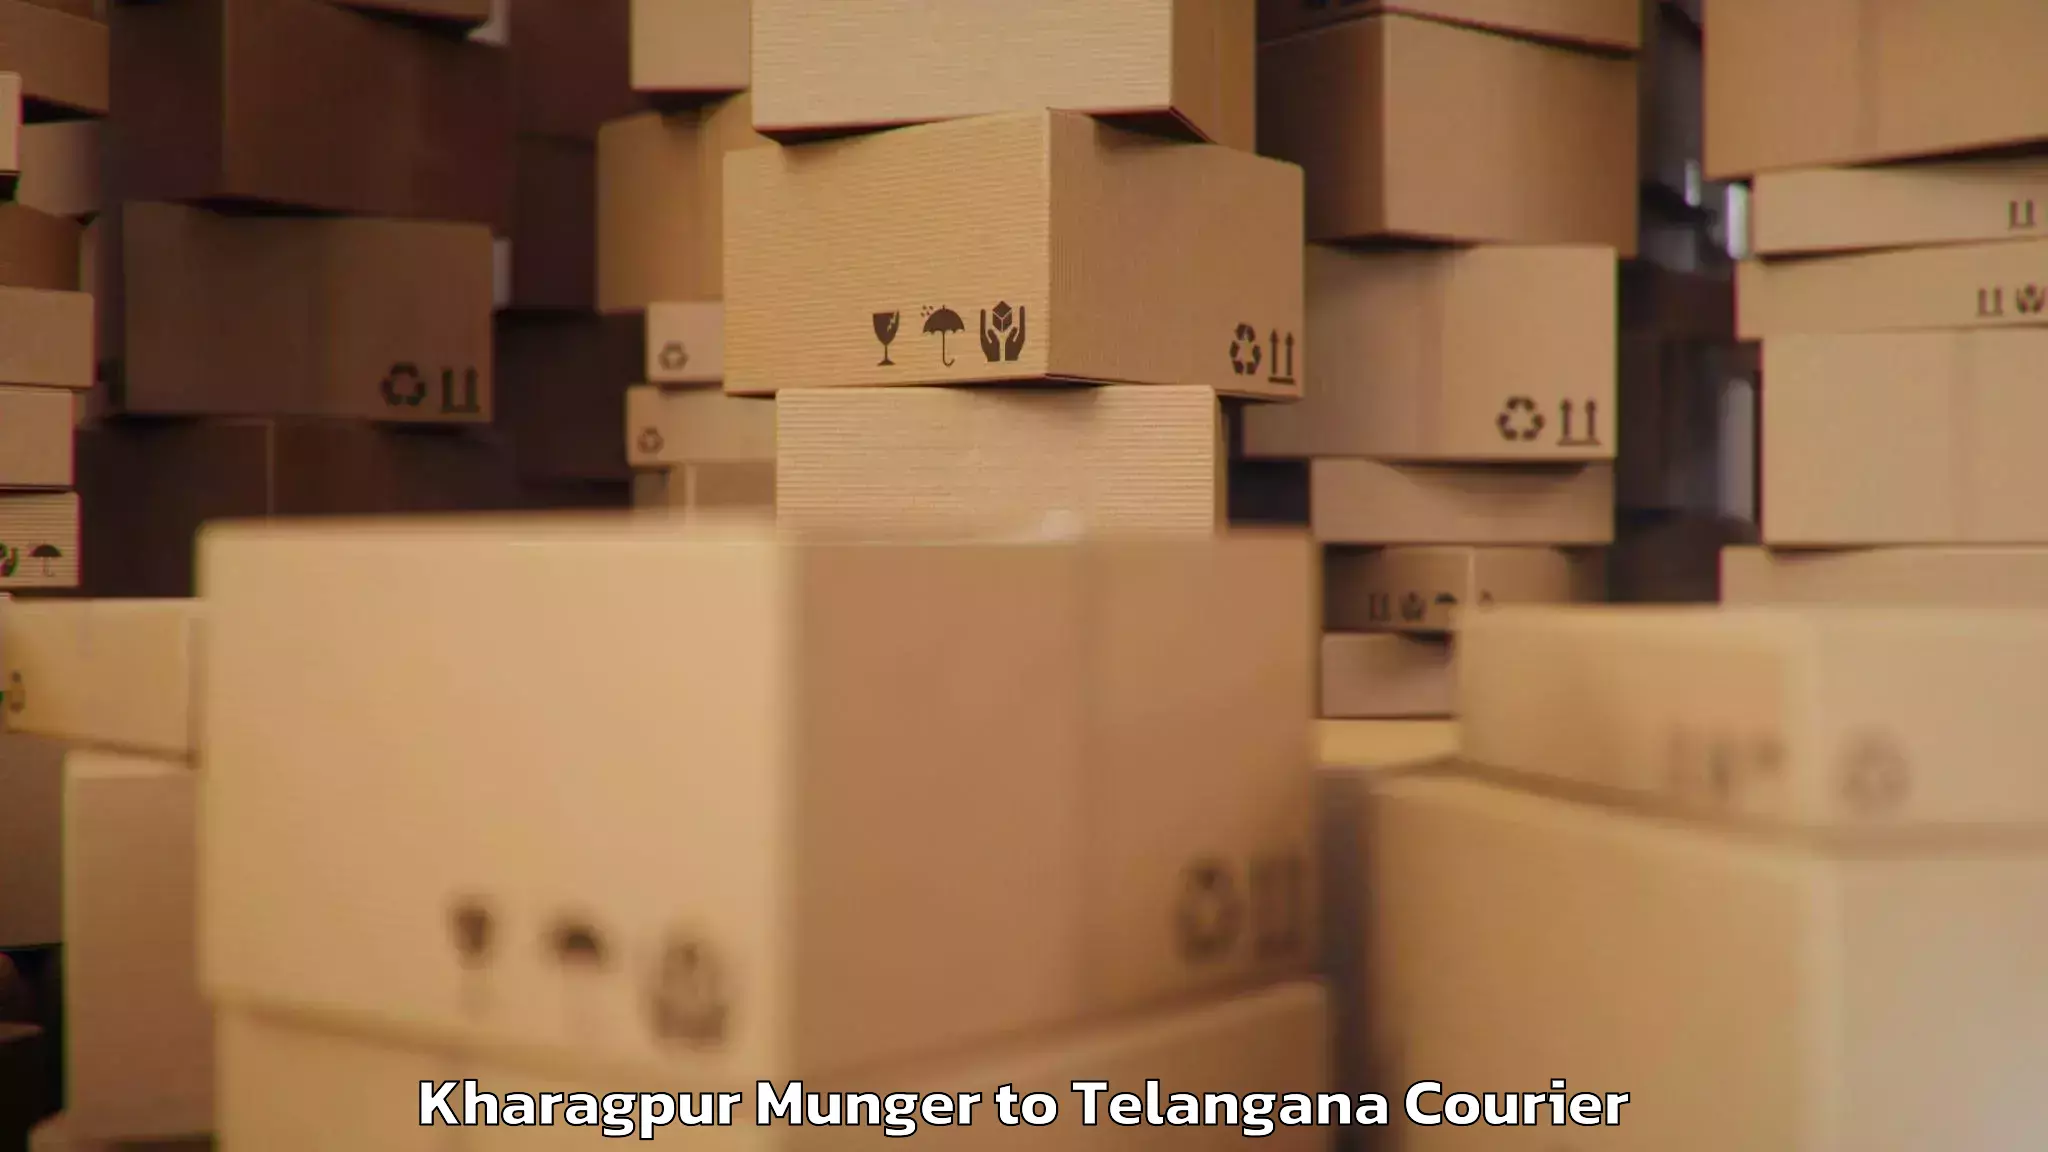 Excess baggage transport Kharagpur Munger to Kaghaznagar